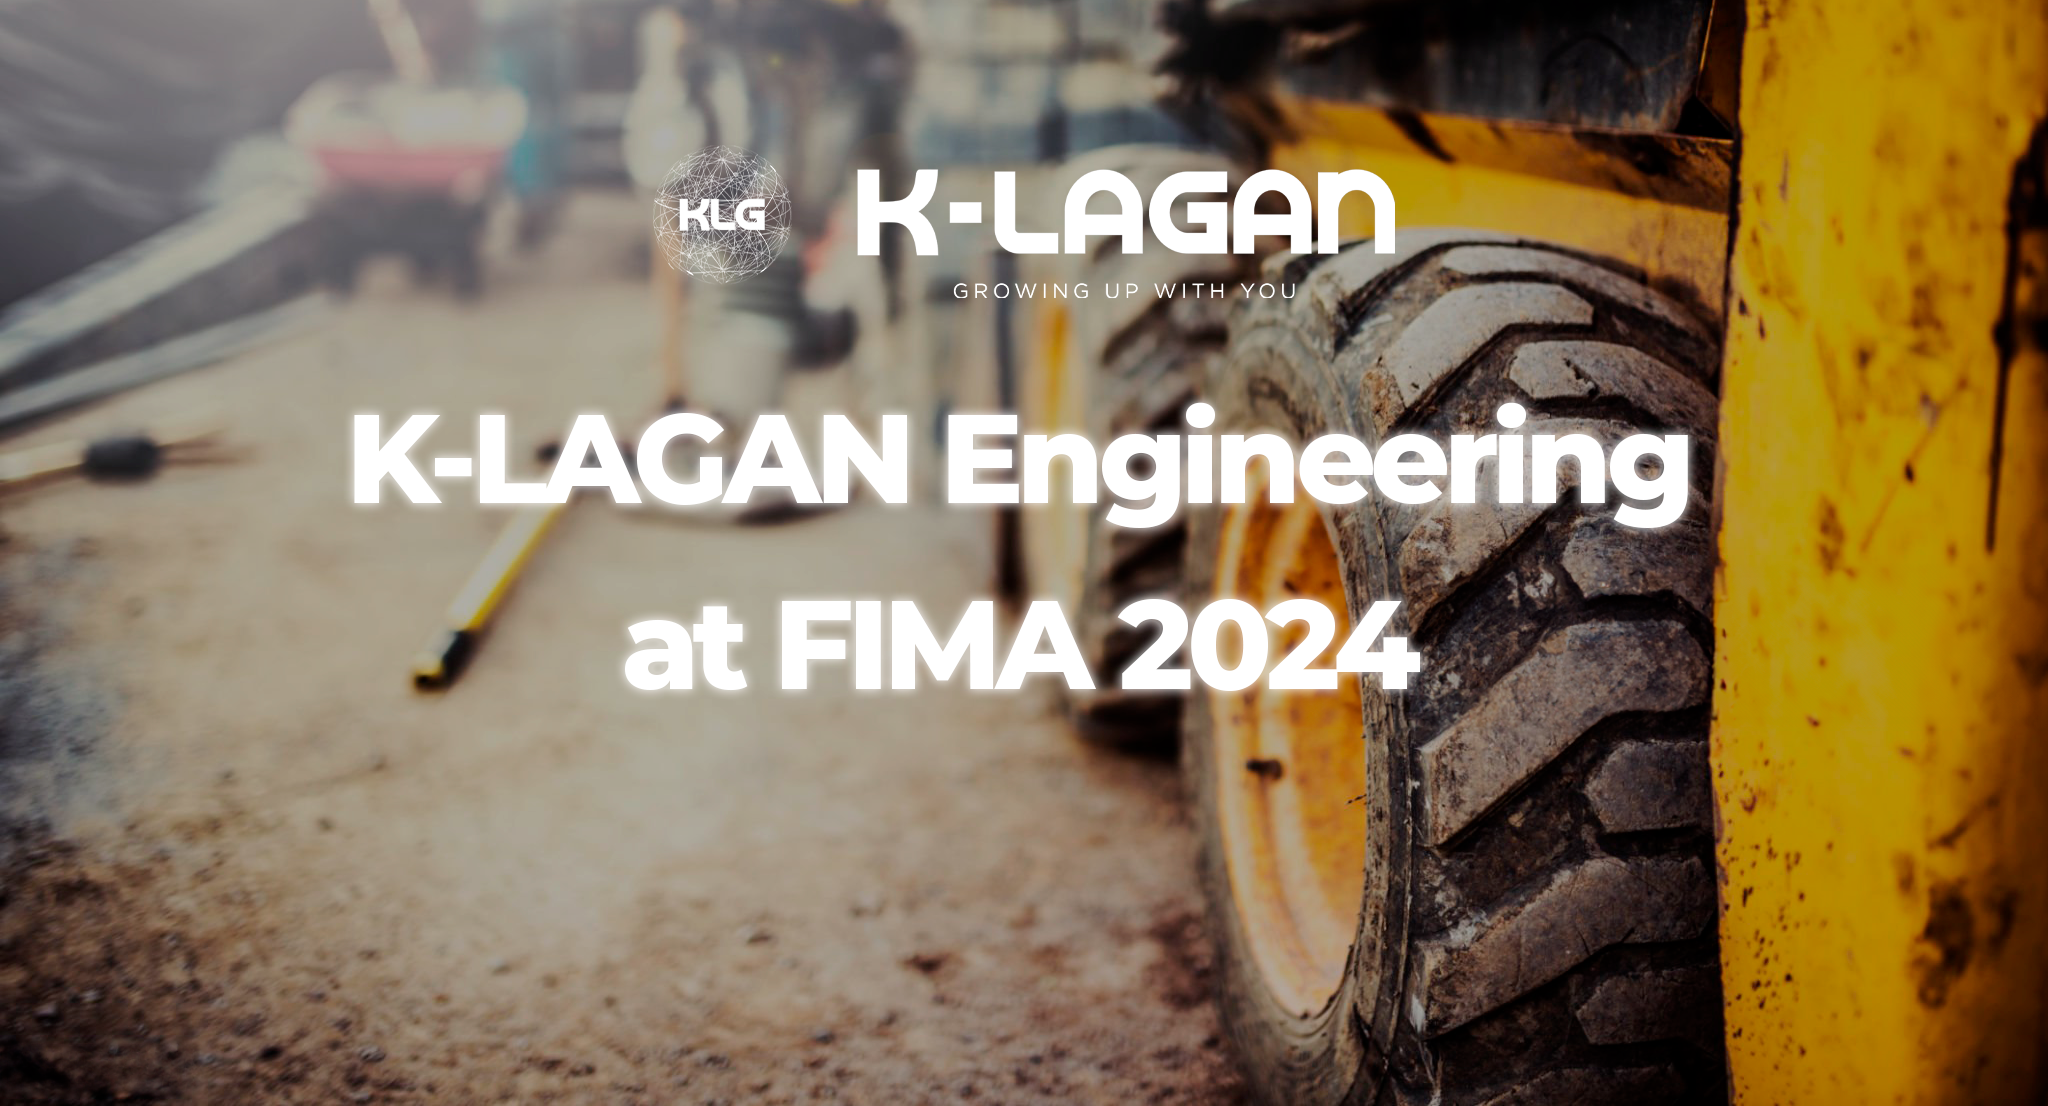 K-LAGAN Engineering, presente en FIMA 2024